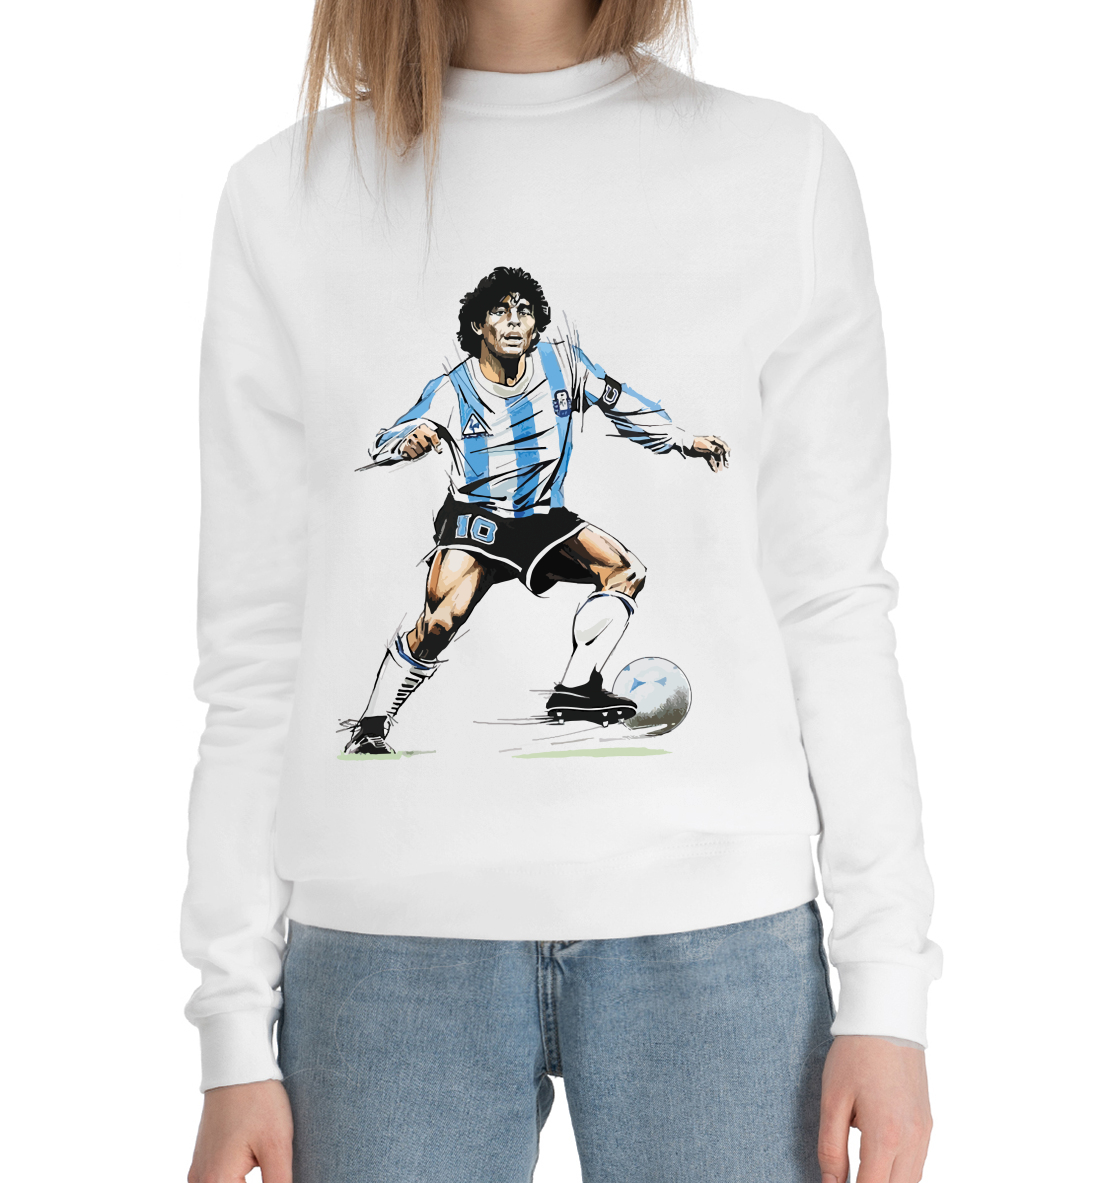 Женский Хлопковый свитшот Diego Maradona, артикул FLT-455635-hsw-1mp